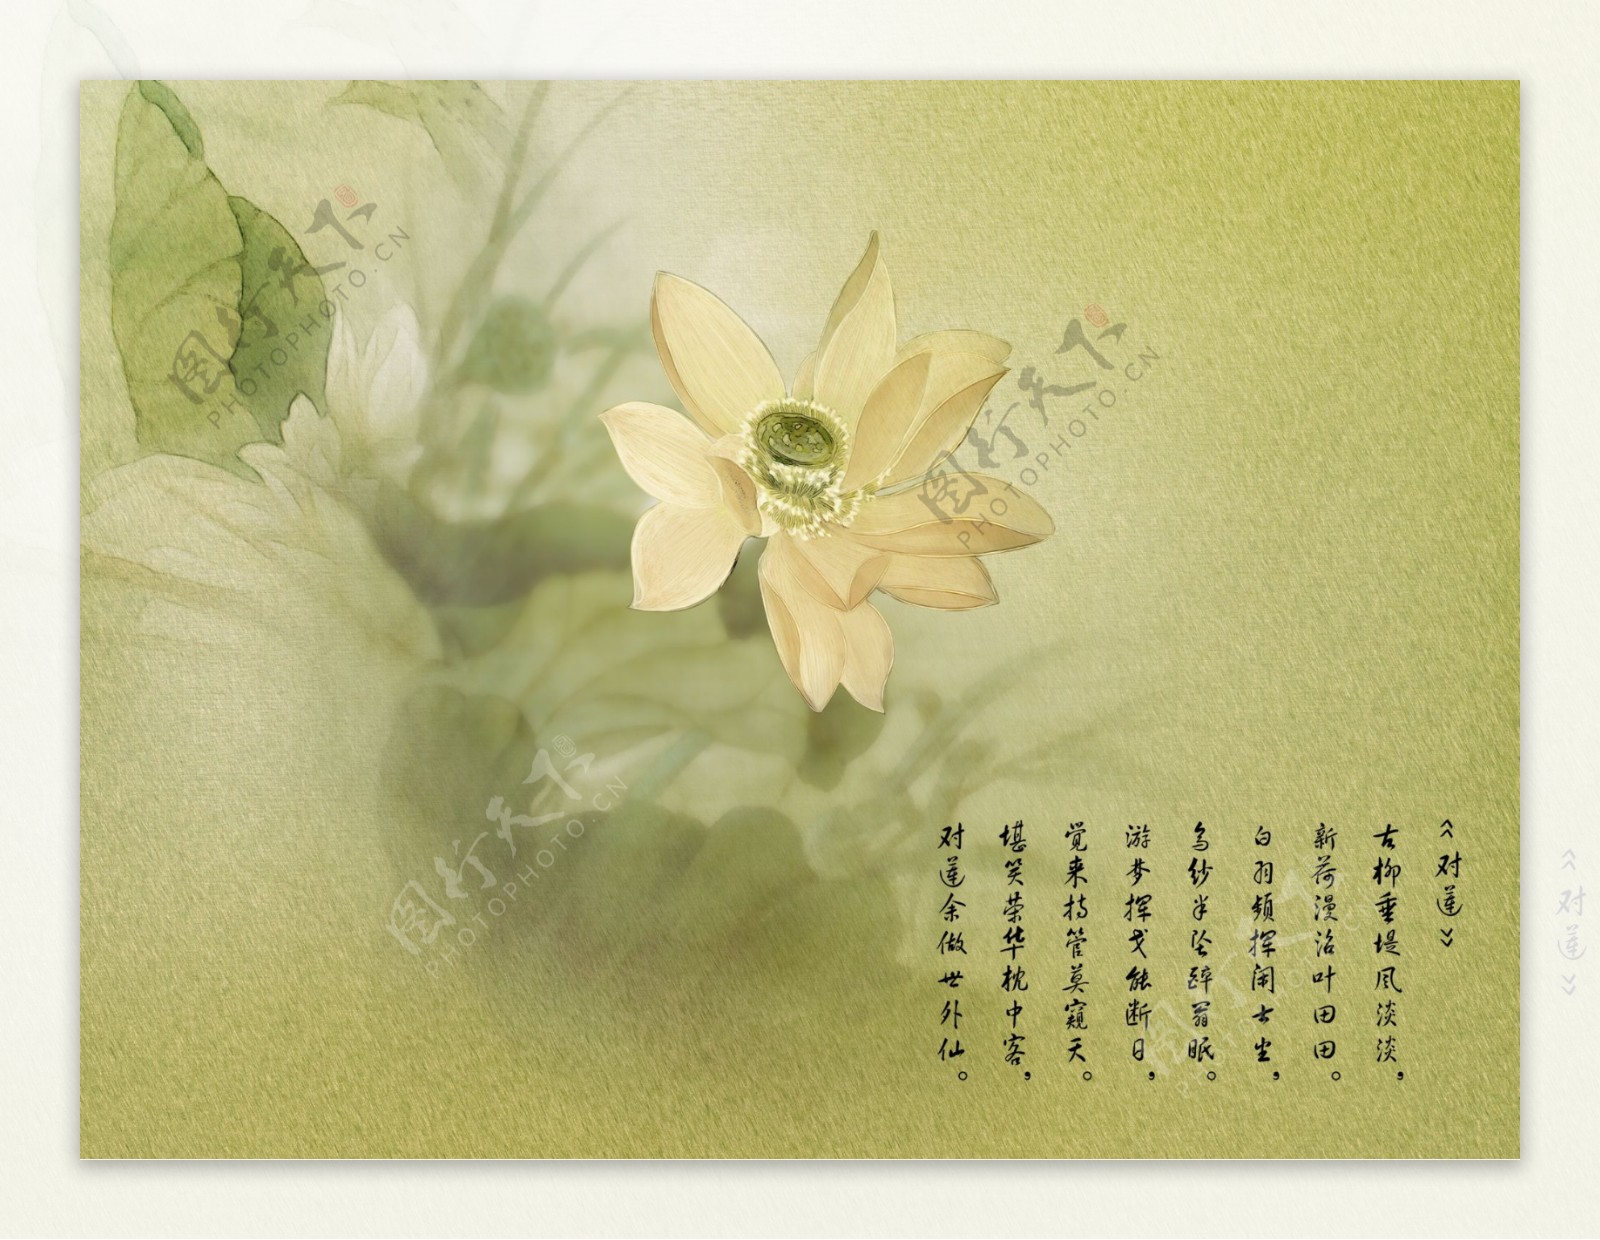 婚纱摄影墨迹中国文件模版10幅图仅需一个共享分